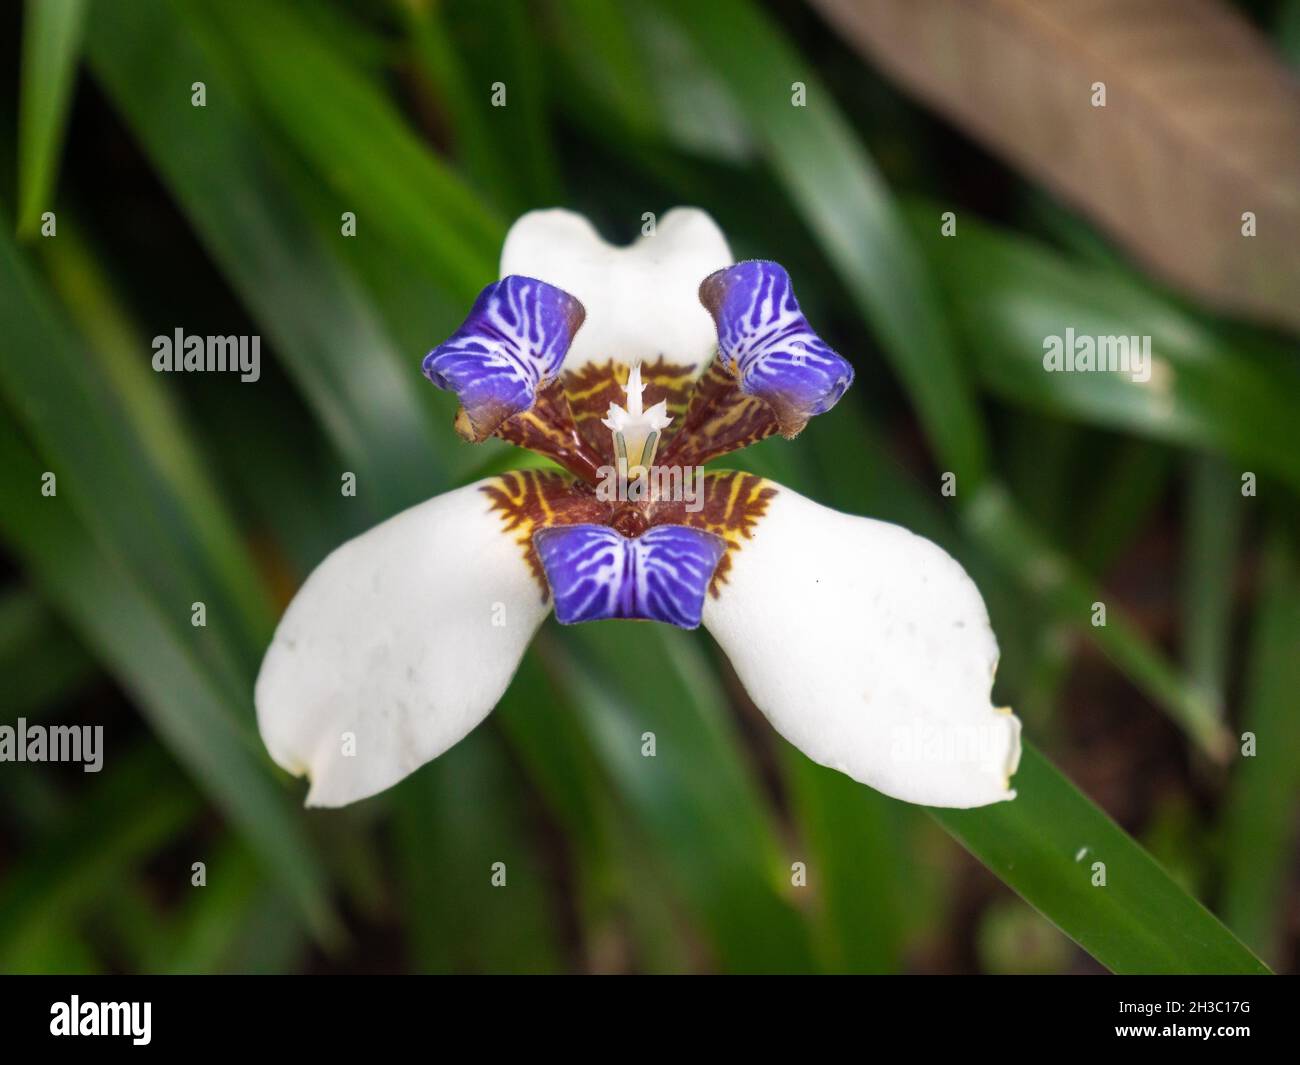 Fiore bianco e viola con tre petali noto come Passeggiate Iris, l'Iris dell'Apostolo e la pianta dell'Apostolo (Trimezia) è nel giardino di Medellin, Colombia Foto Stock